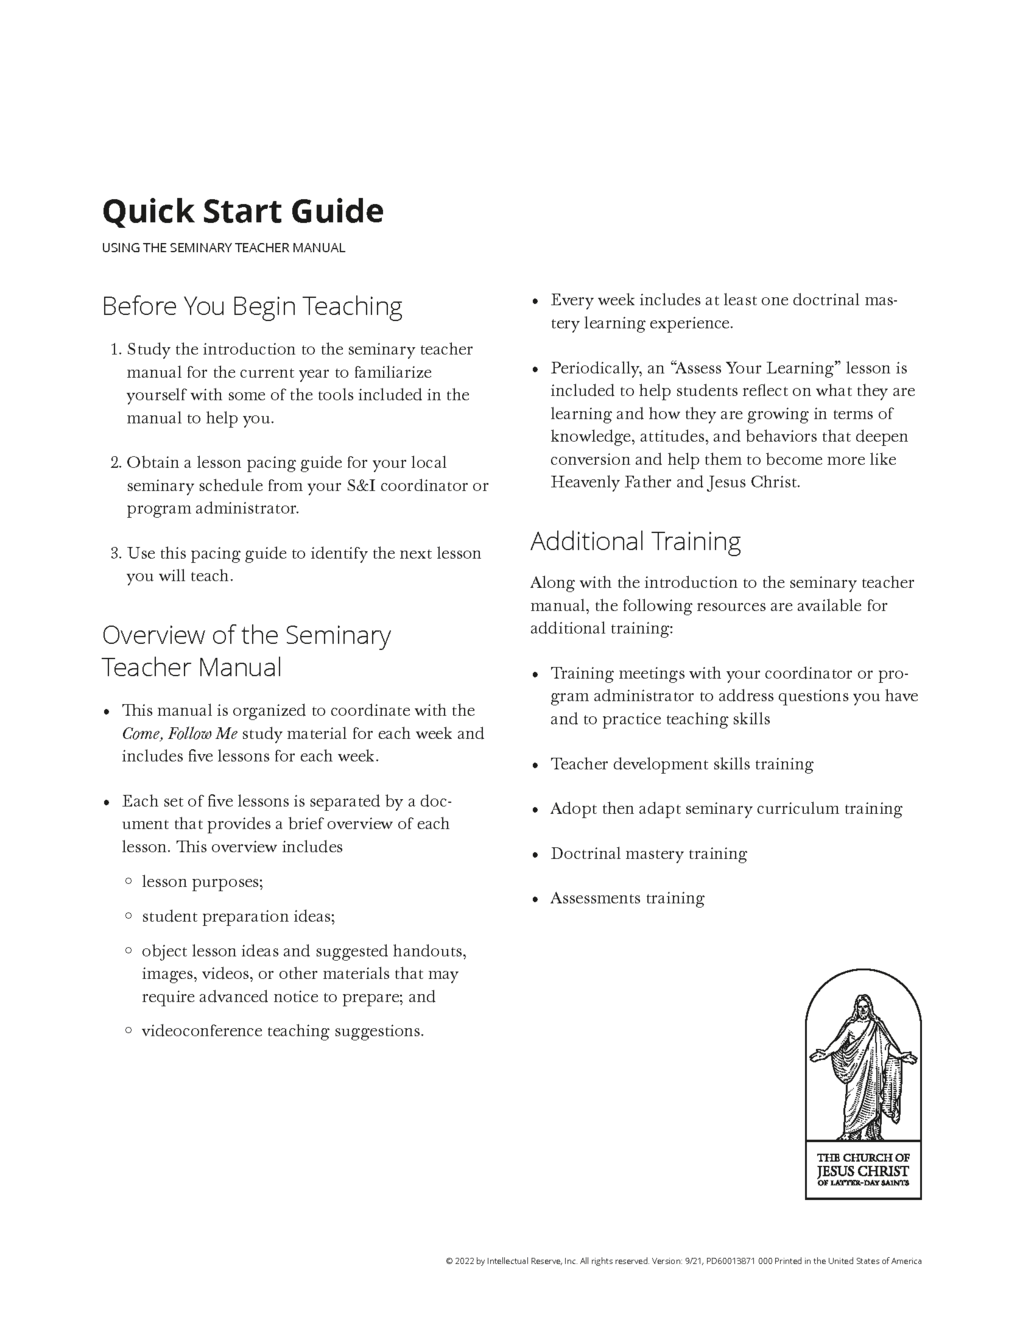 « Guide de démarrage rapide », Formation au programme d’étude